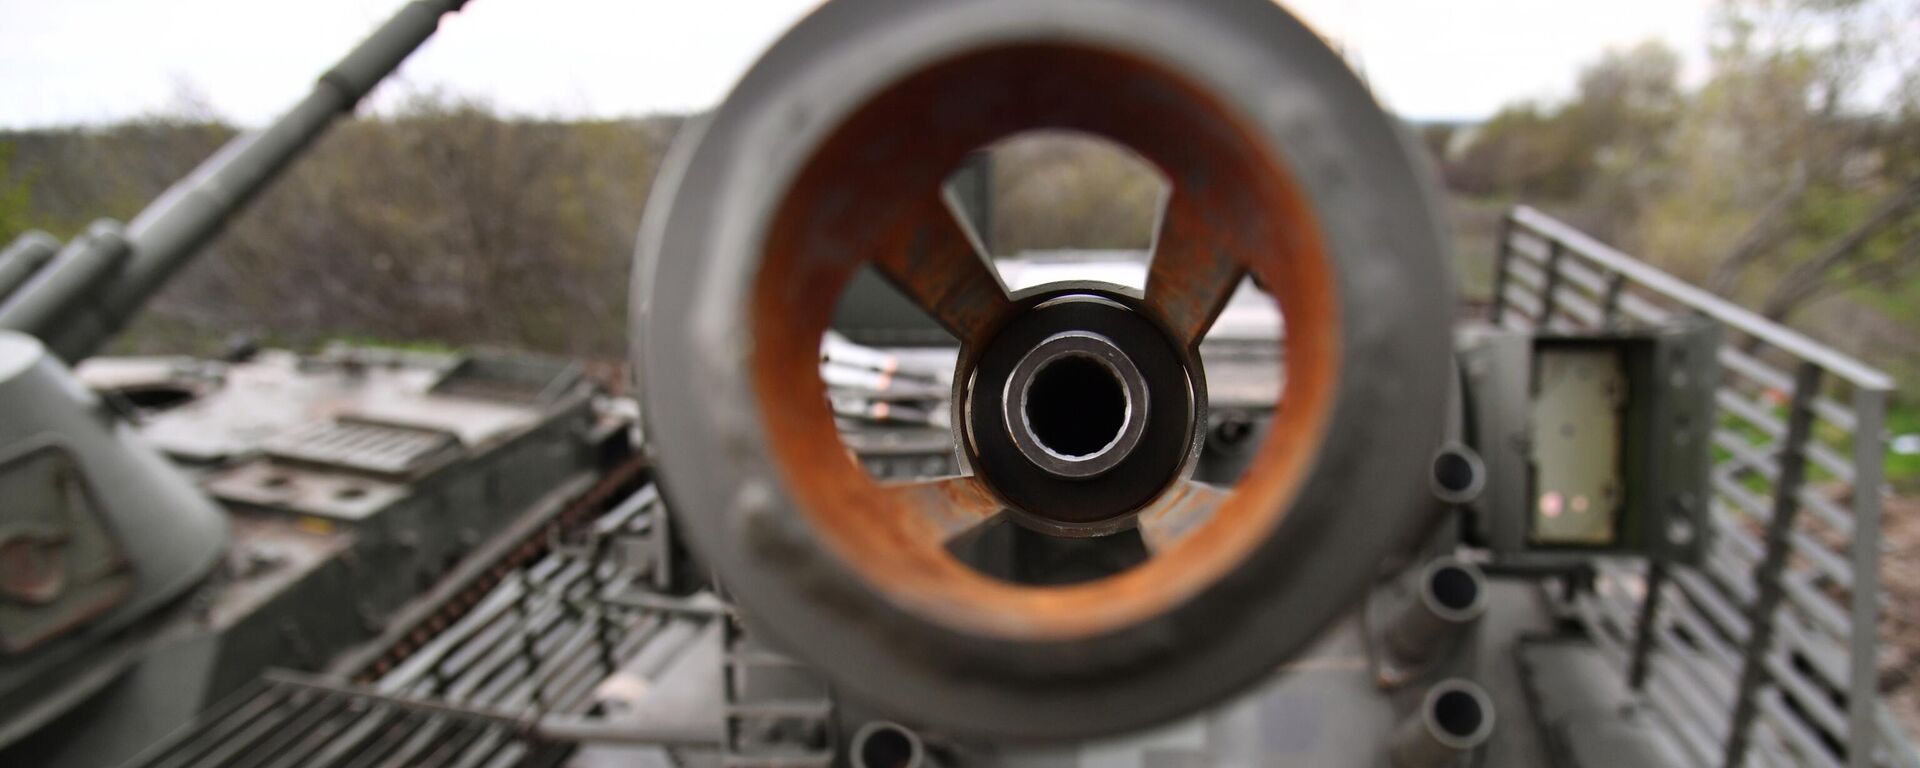 Пушка на бронетранспортере БТР 4Е, оставленном Вооруженными силами Украины в Купянске. - Sputnik Кыргызстан, 1920, 07.05.2022